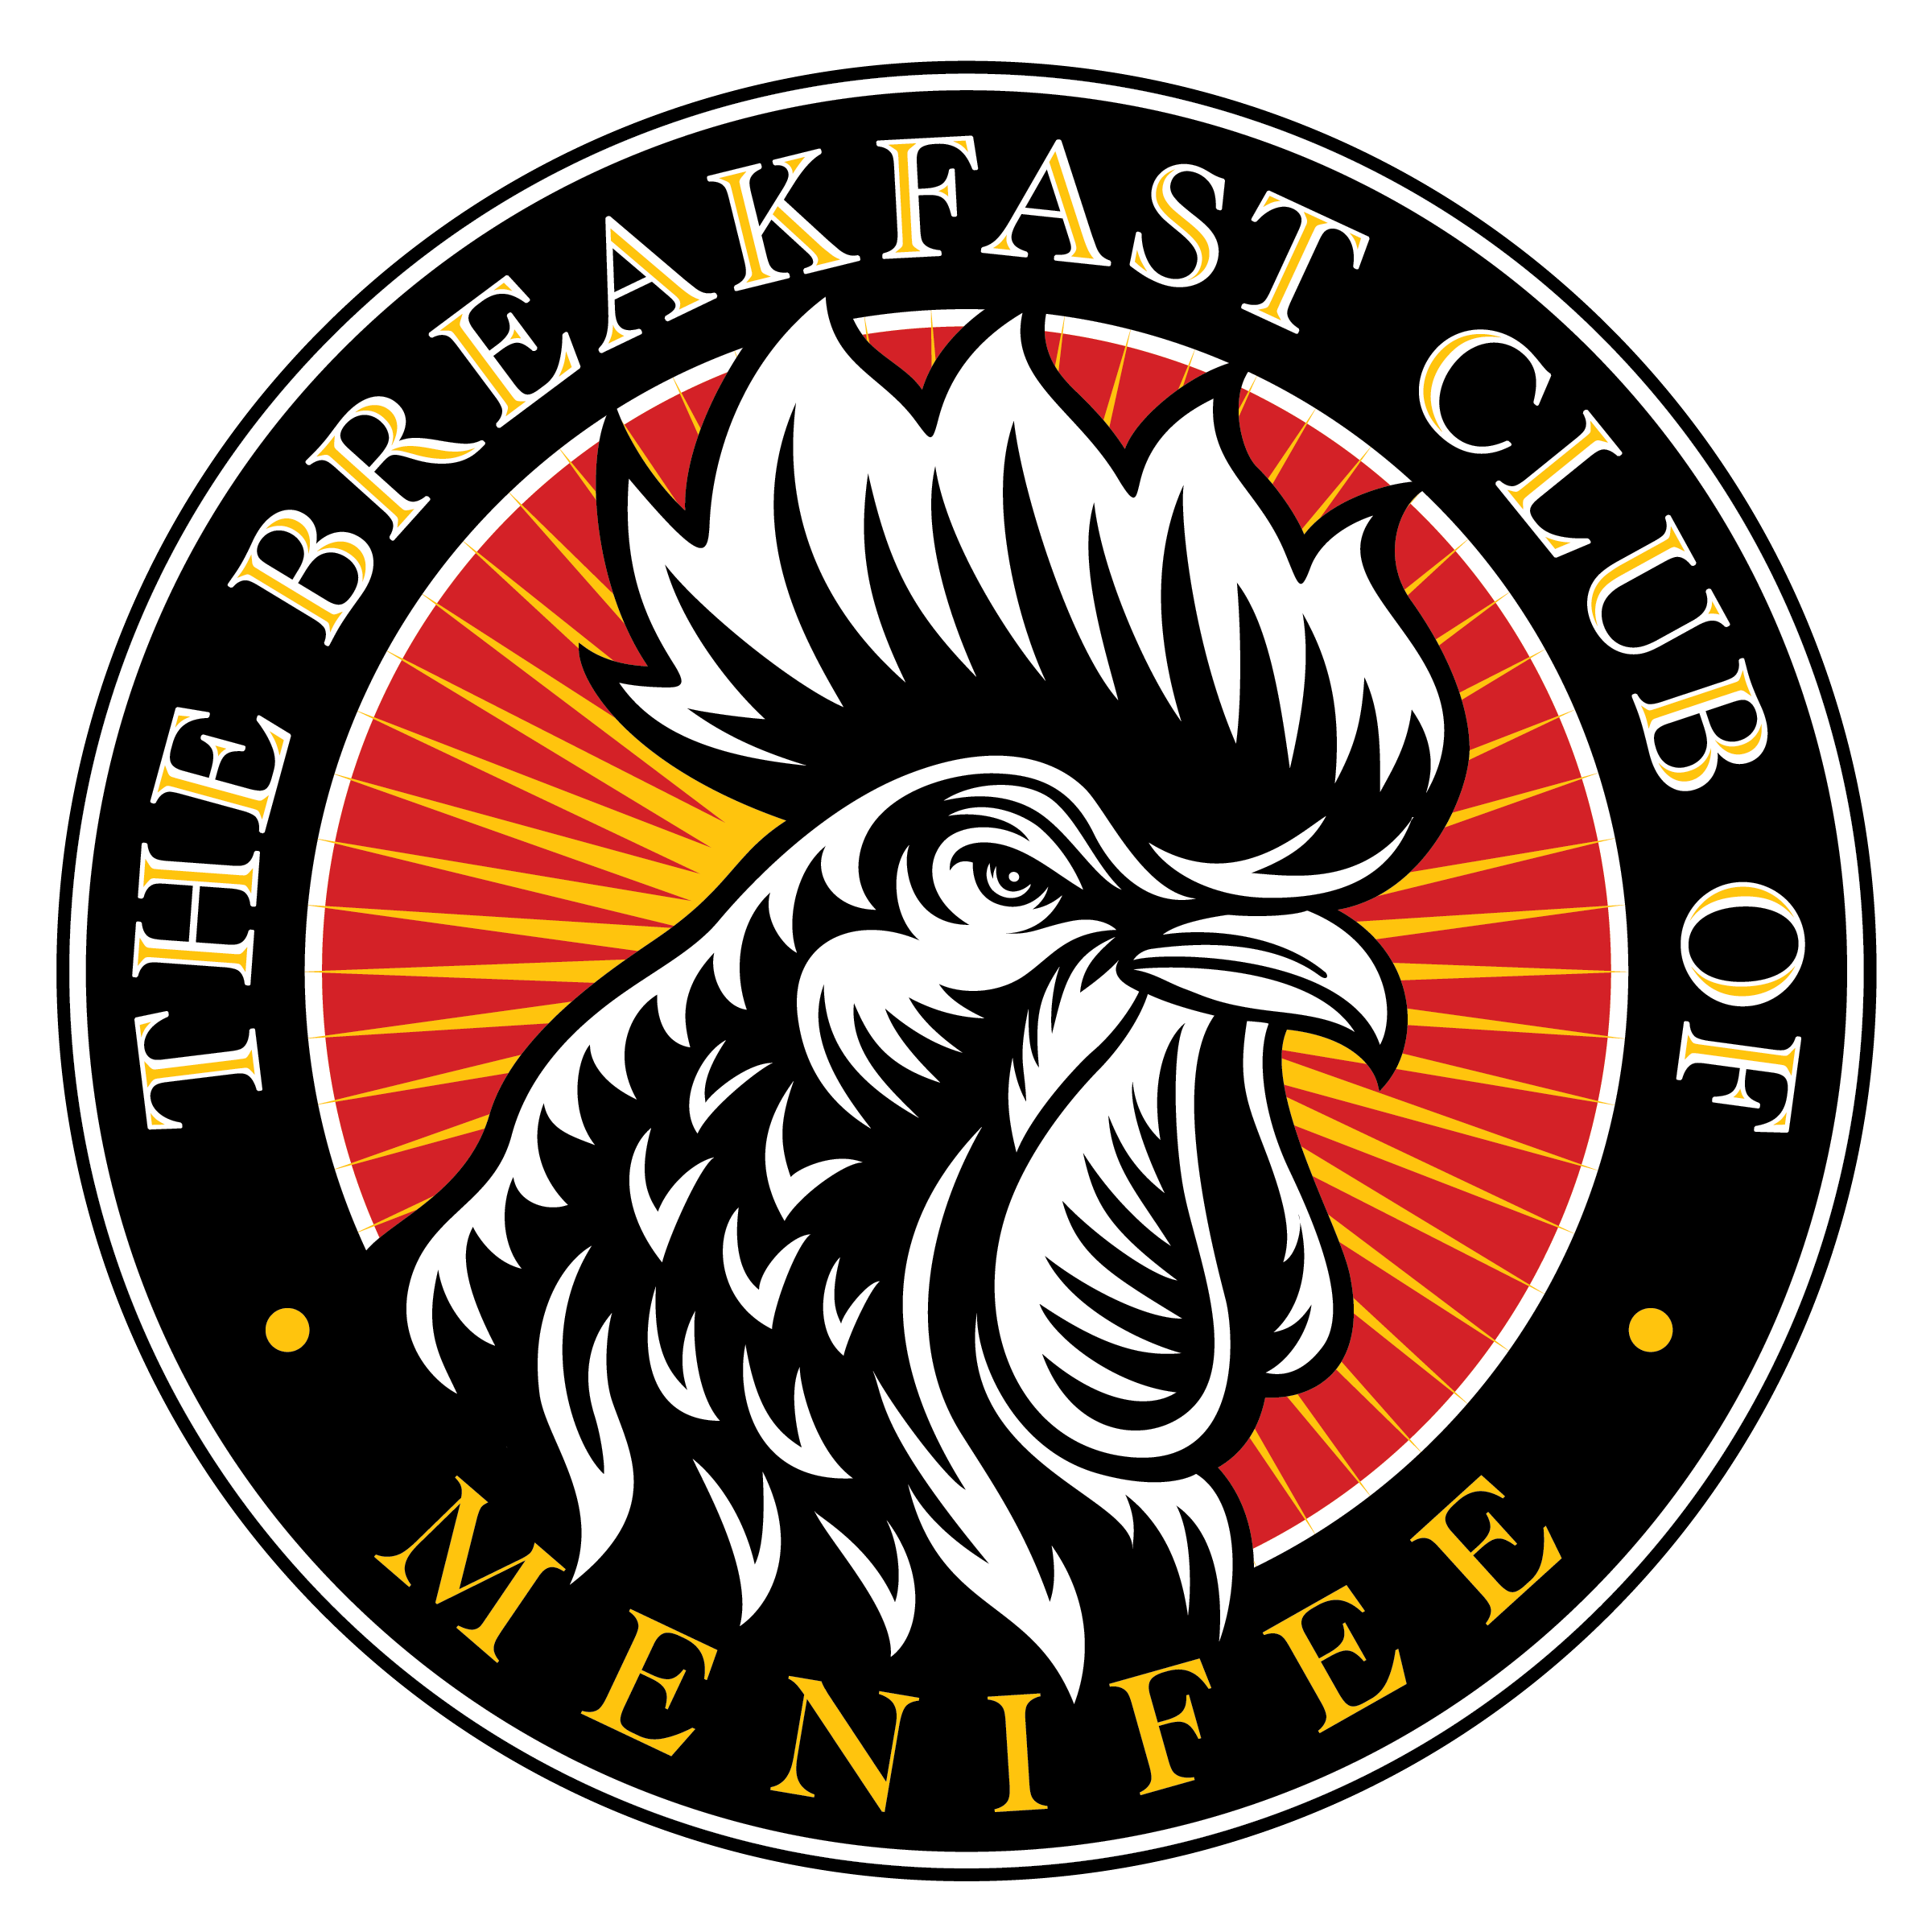 The Breakfast Club of Menifee